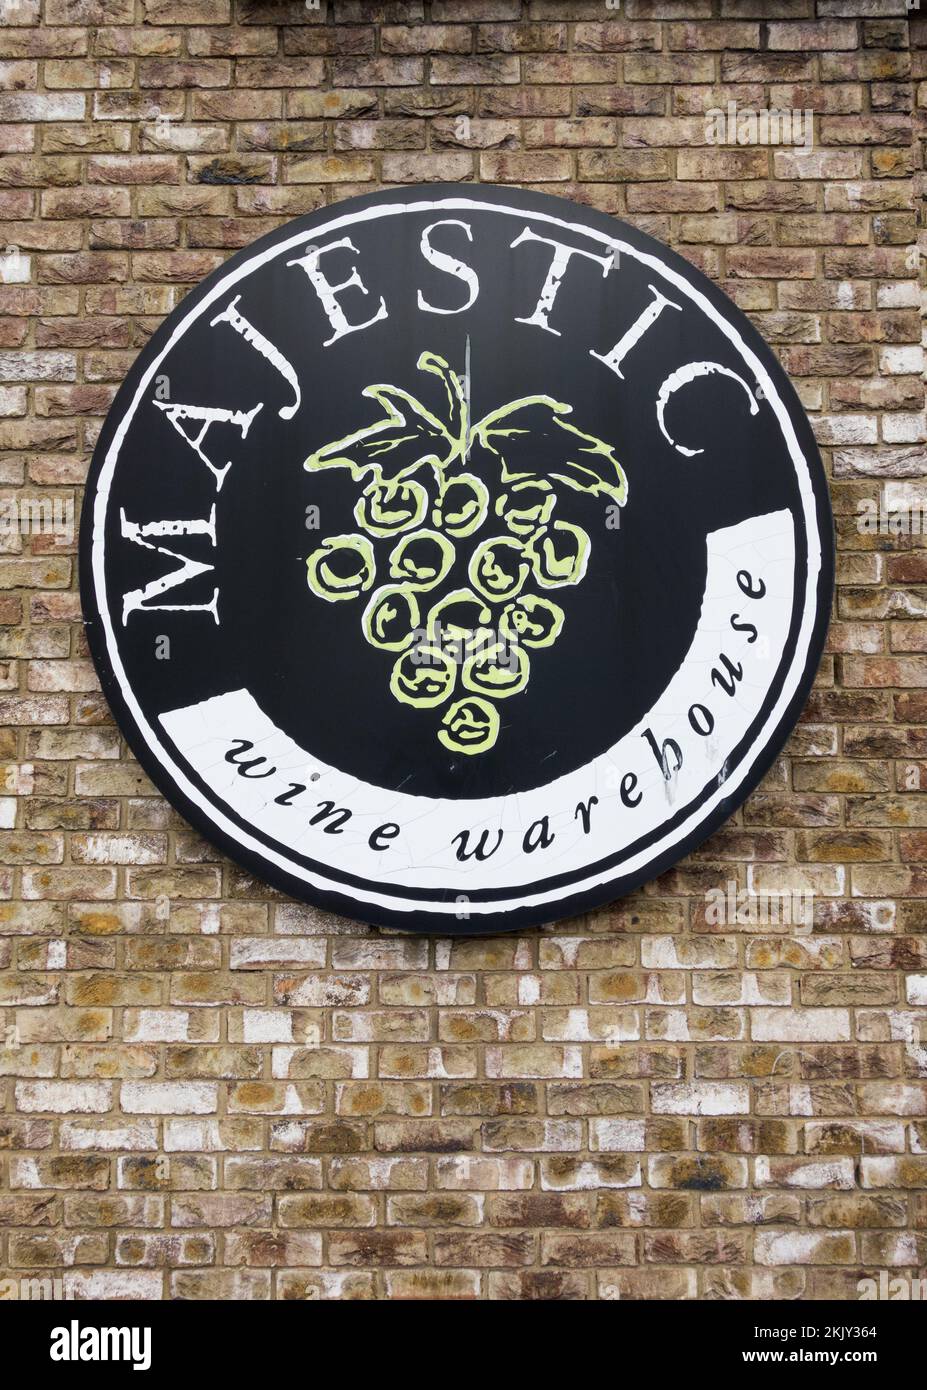 Gros plan sur un logo et un panneau Majestic Wine Warehouse, Londres, Angleterre, Royaume-Uni Banque D'Images